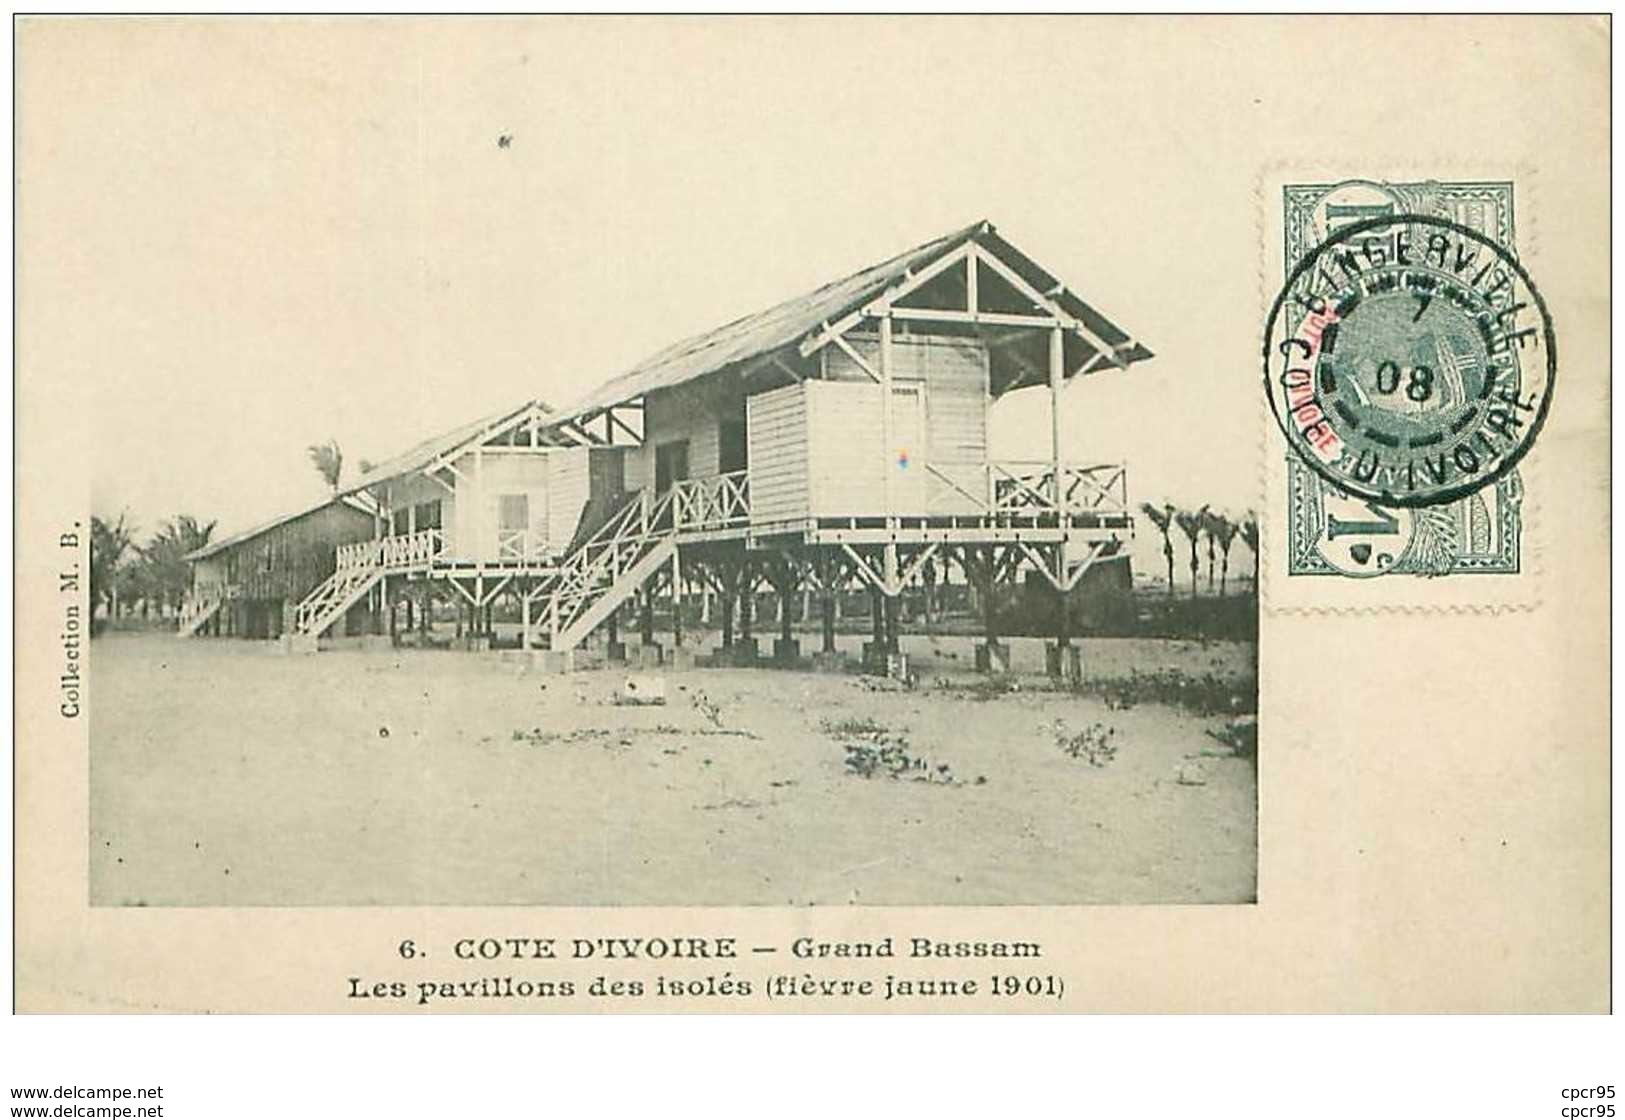 COTE D'IVOIRE.n°31146.GRAND BASSAM.LES PAVILLONS DES ISOLES.FIEVRE JAUNE 1901 - Ivory Coast